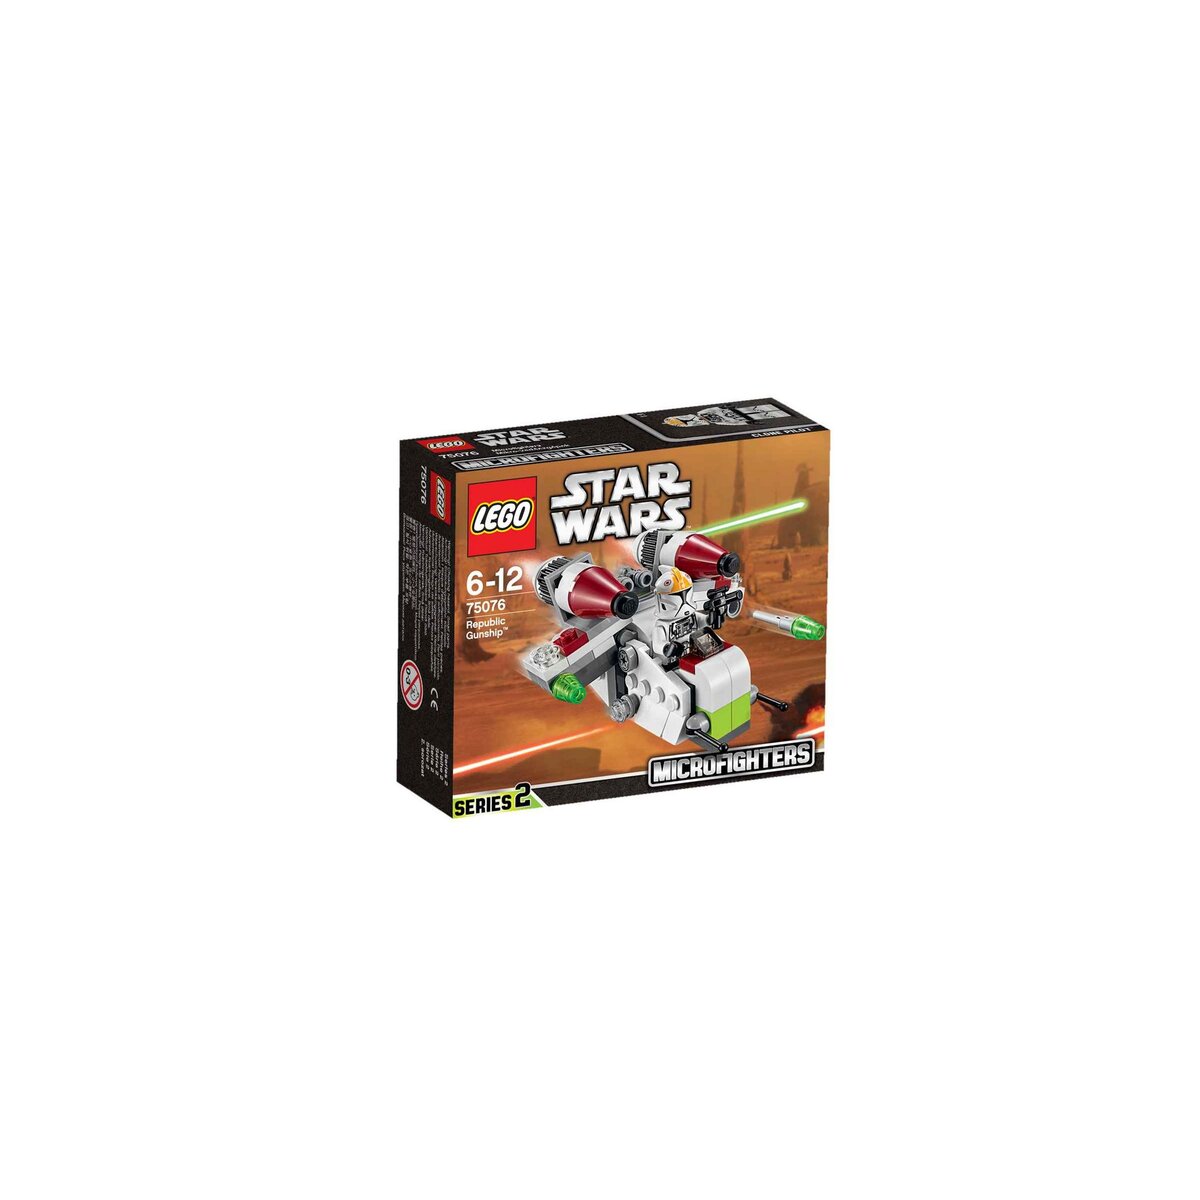 LEGO Star Wars 75076